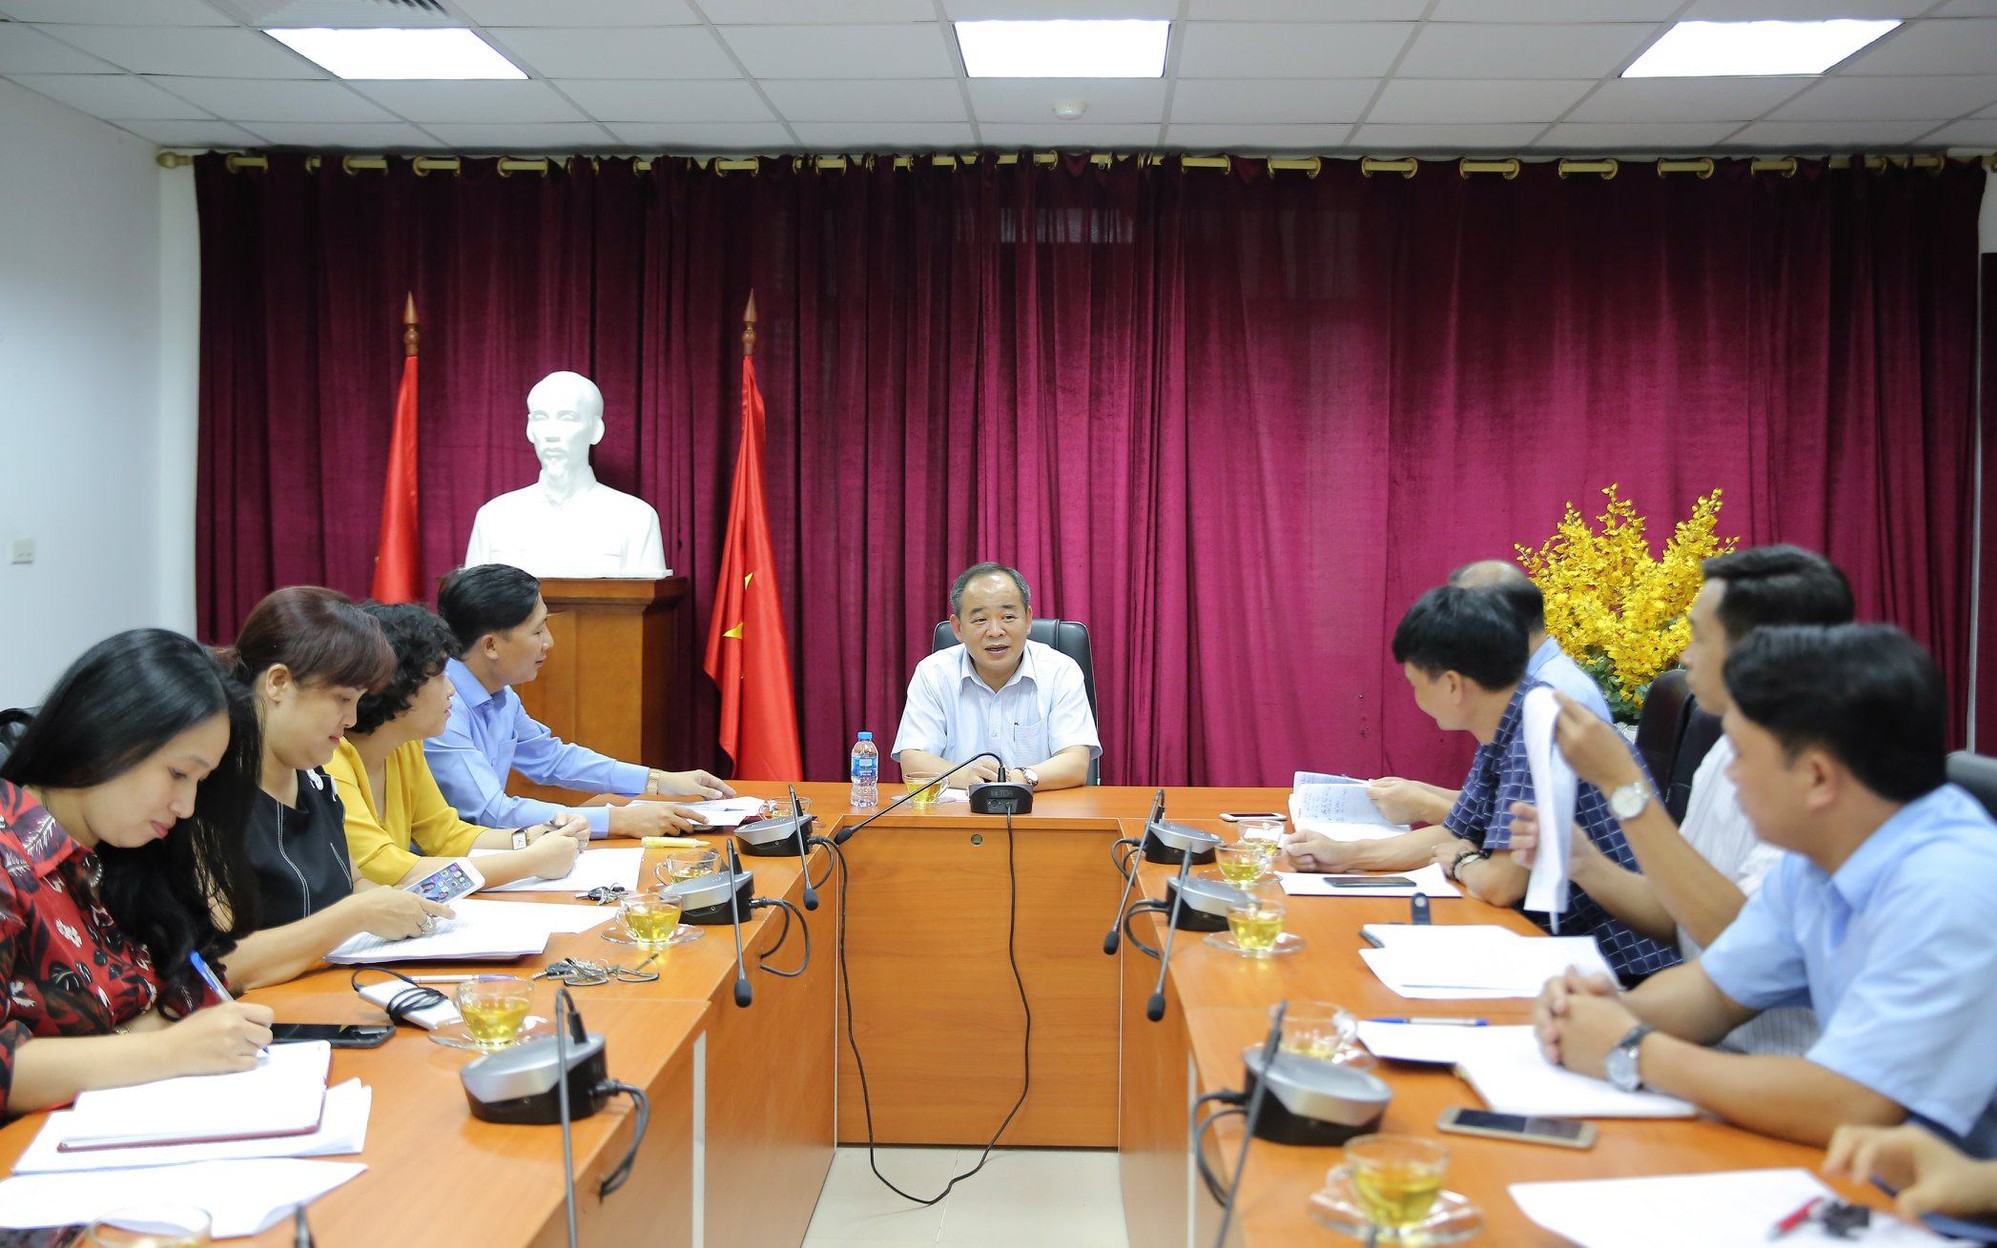 Thứ trưởng Lê Khánh Hải: Triển khai quyết liệt để hoàn thành đúng tiến độ các nhiệm vụ về công nghệ thông tin của ngành VHTTDL 